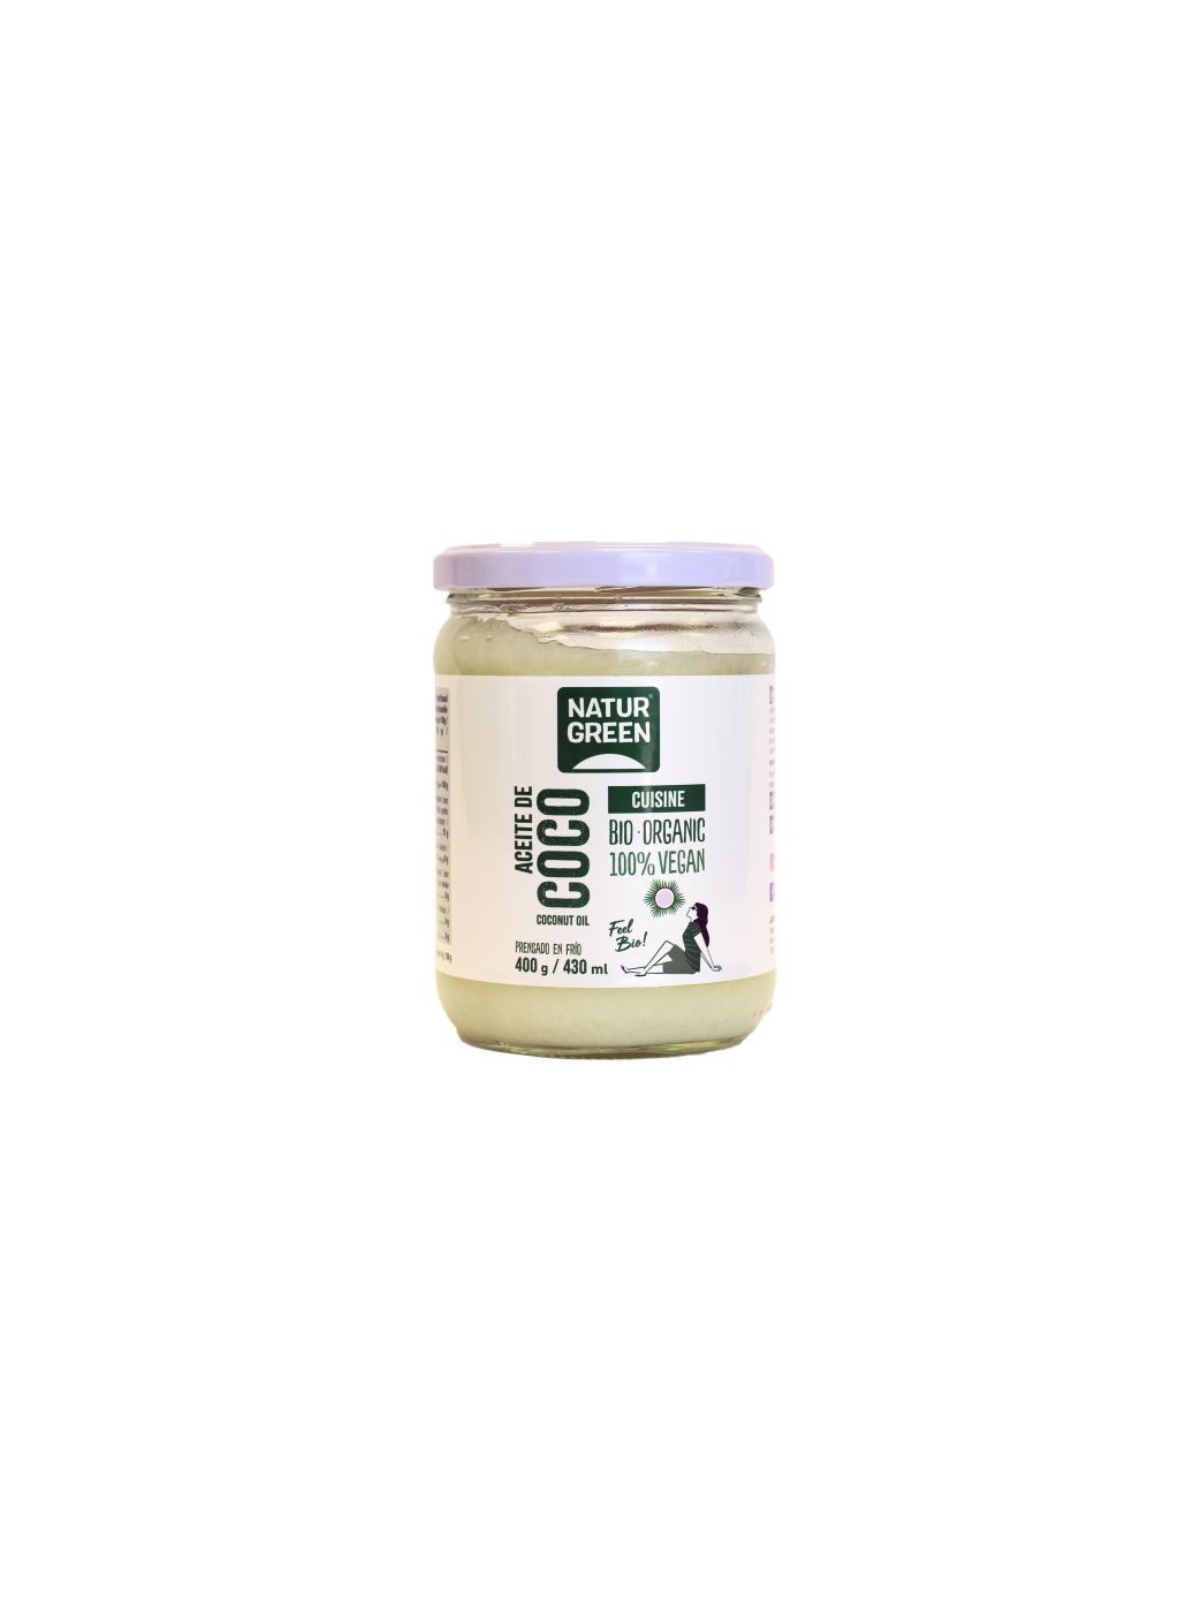 Vita33 - El aceite de lino ecológico de Naturgreen es un aceite que se  obtiene por primera presión en frío, siempre por debajo de los 40 grados,  para conservar de forma plena